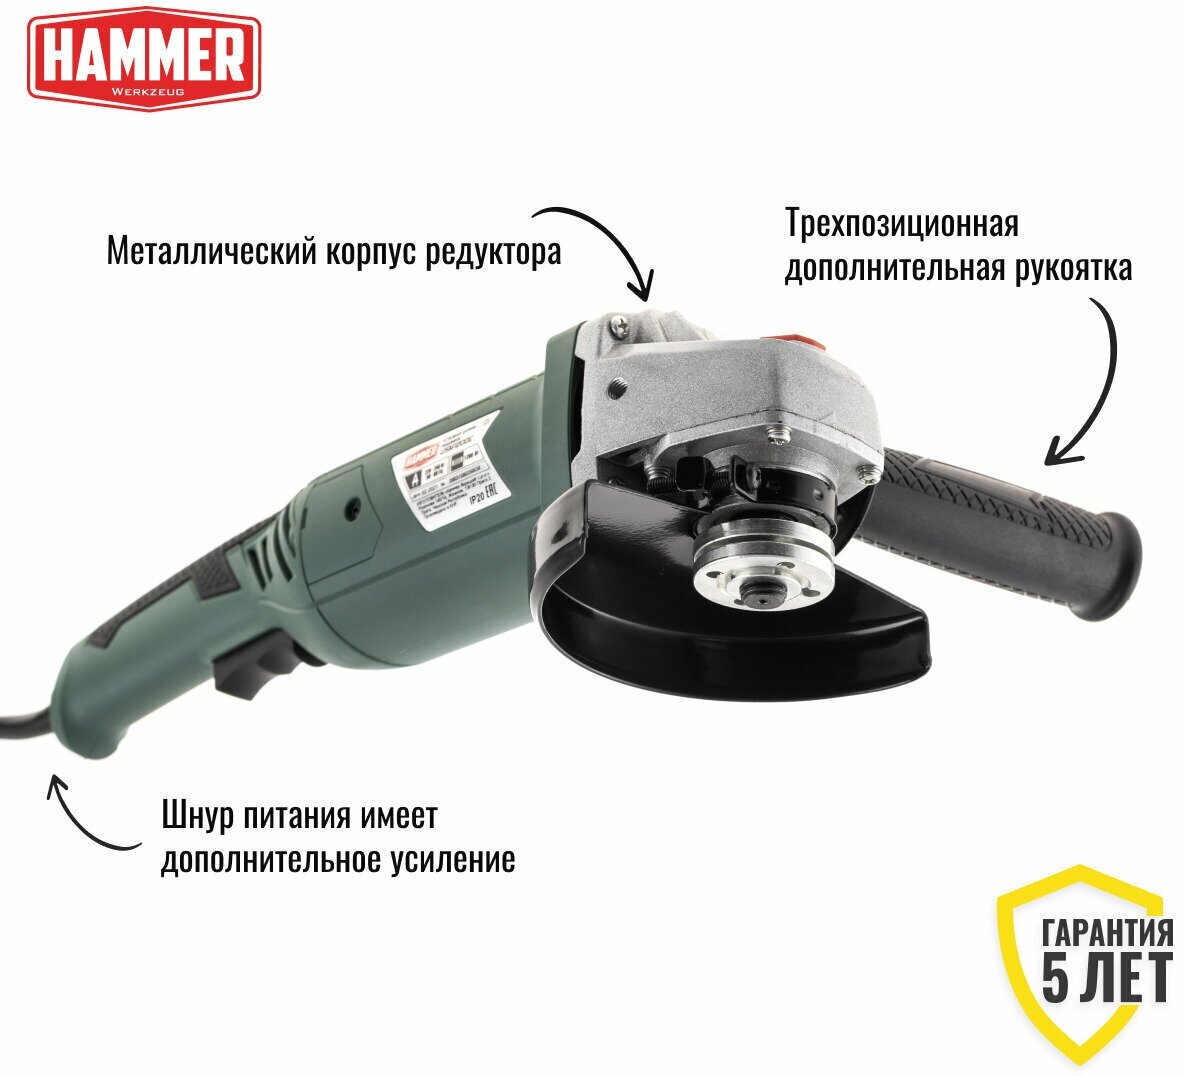 УШМ (болгарка) Hammer - фото №4